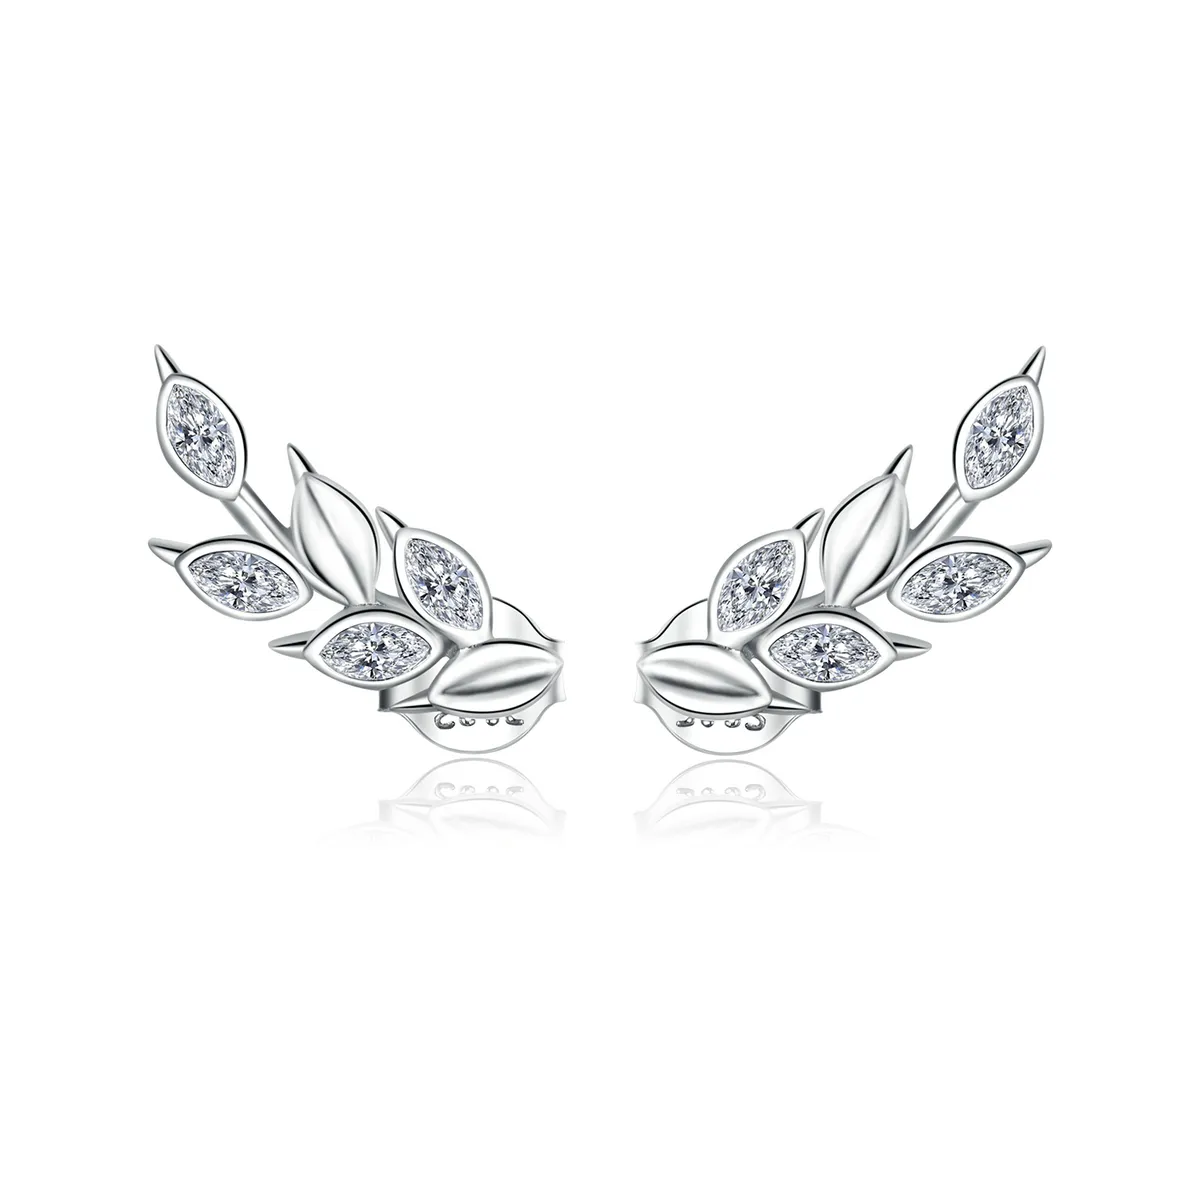 Pandora Style Silver Shining Wheat Ears Stud Earrings - BSE415